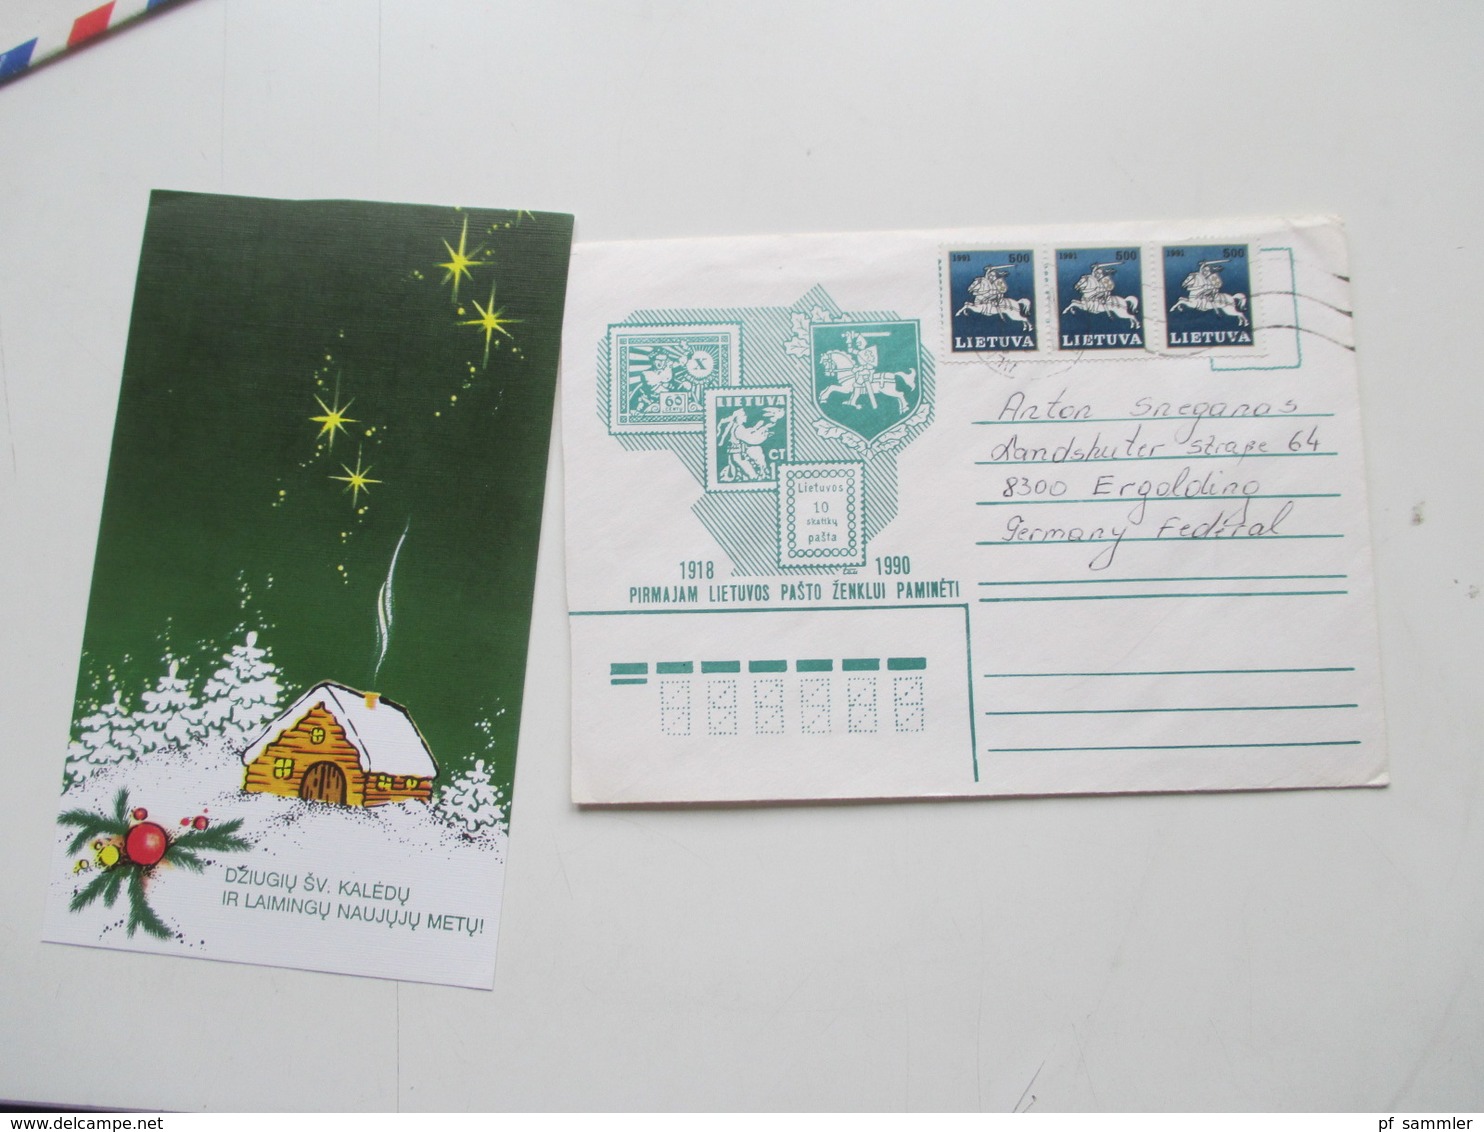 Litauen Republik 92 - 94 Korrespondenz 25 Belege mit Inhalt / Karten usw. Auch Ganzsachen! Zeichnungen u. Briefe